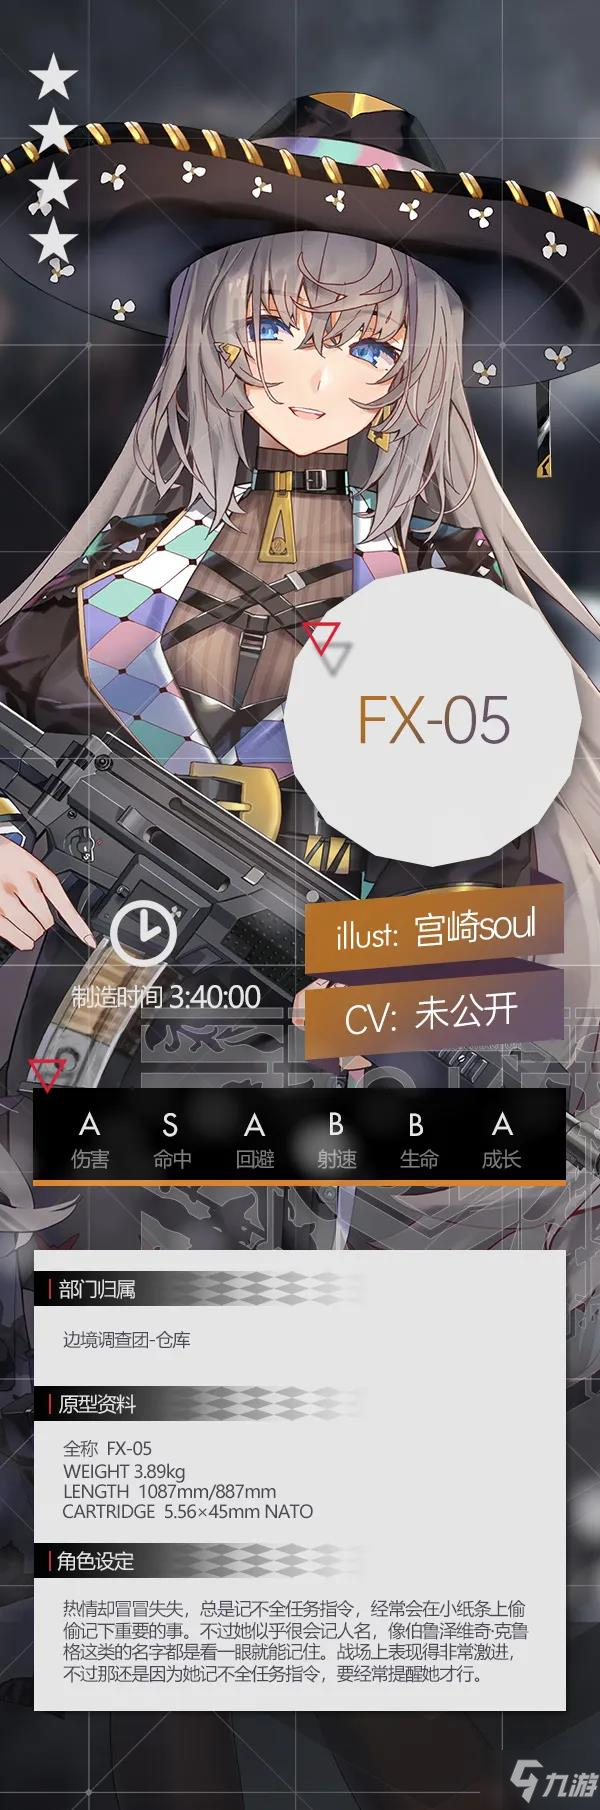 少女前线四星突击步枪人形FX-05介绍